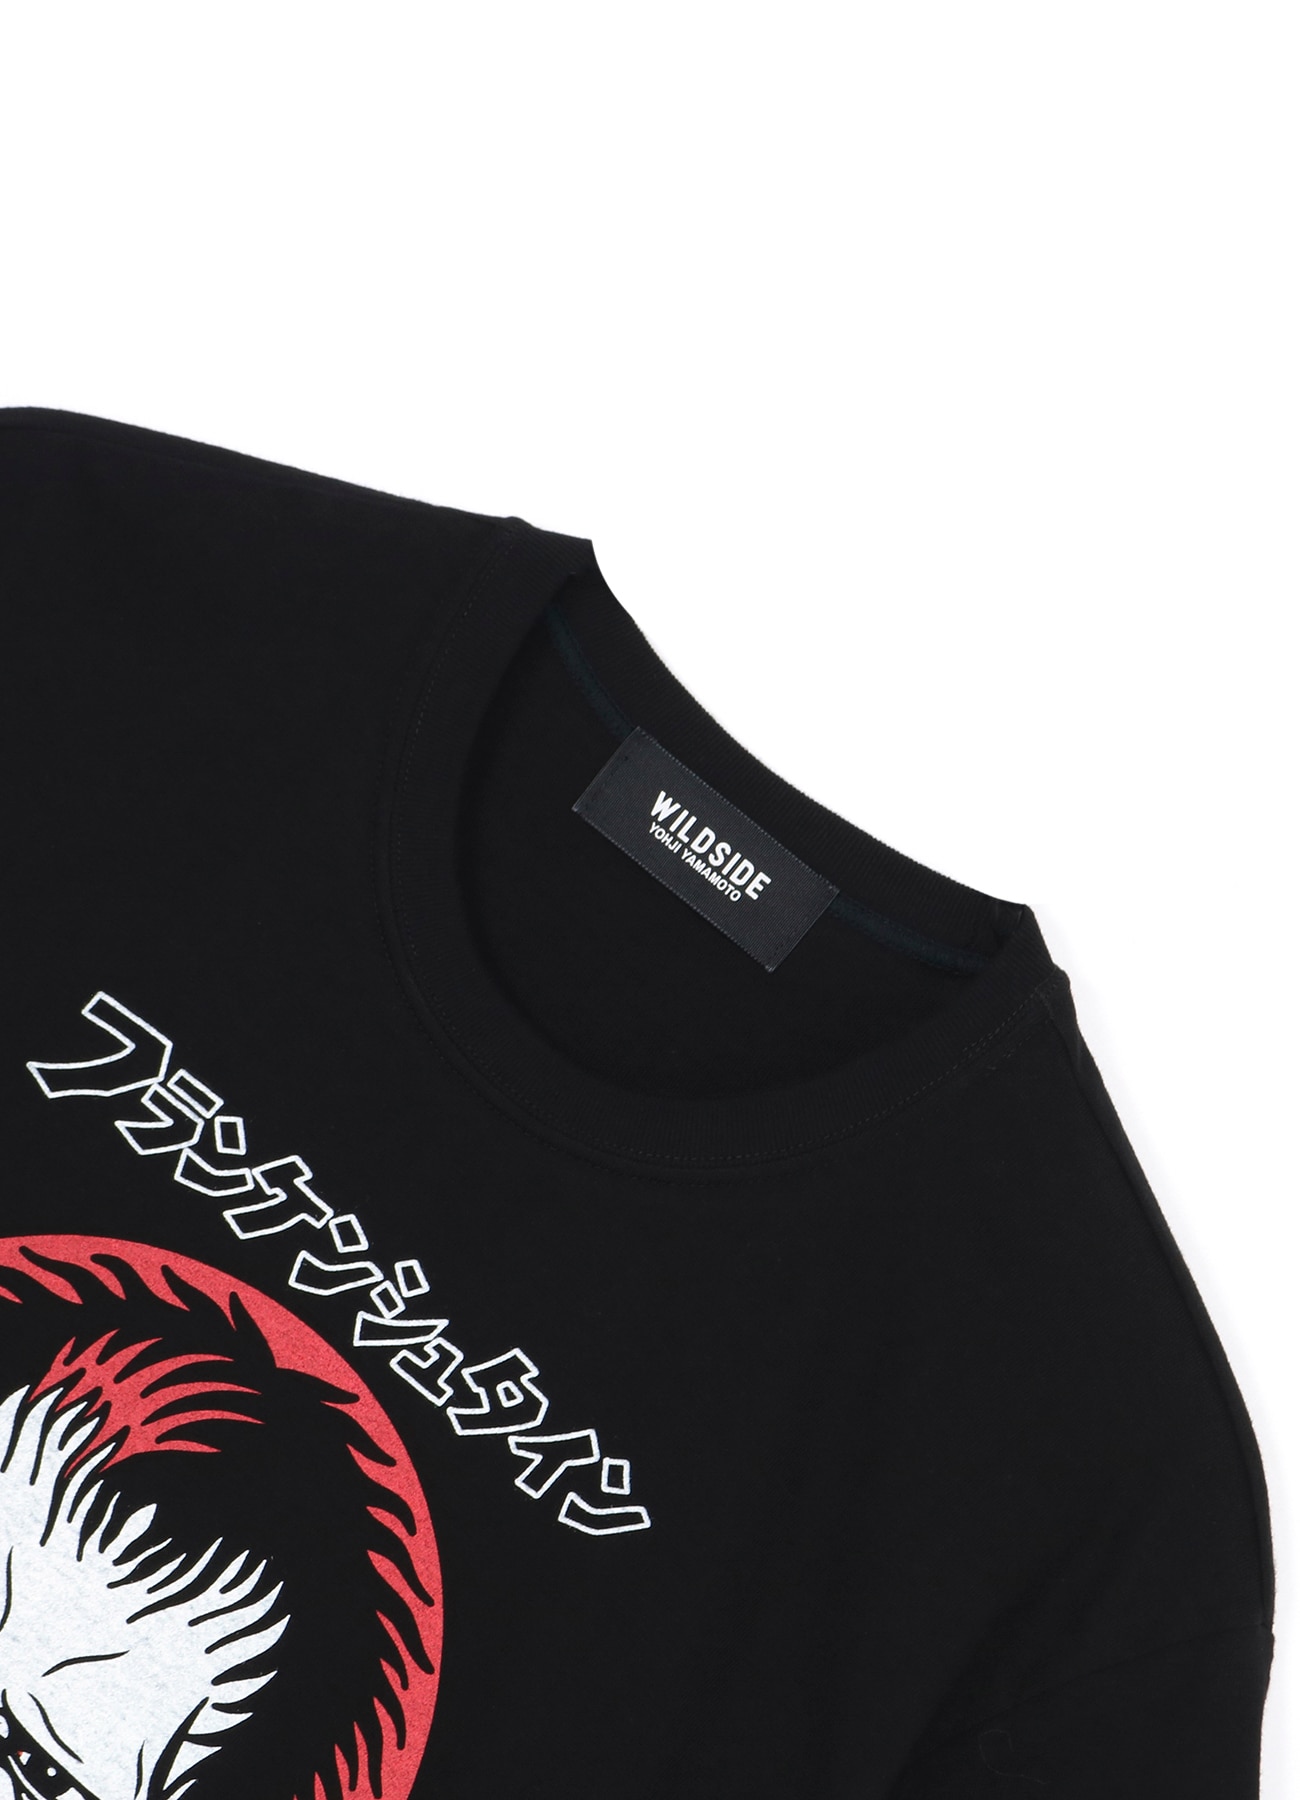 WILDSIDE × IZUMONSTER Frankenstein SS T-Shirt